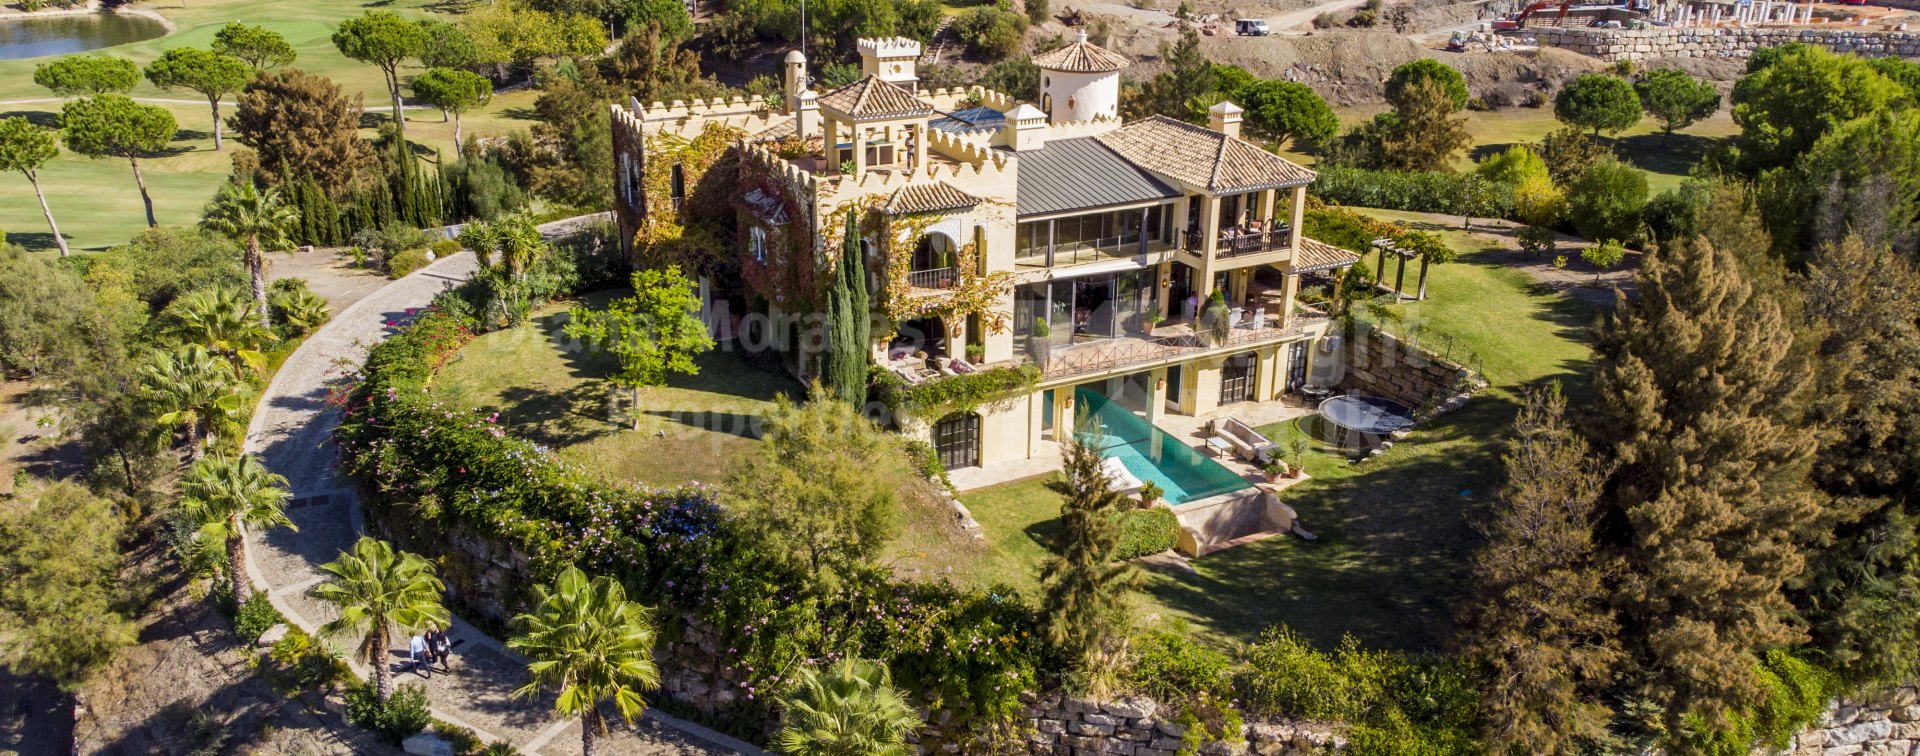 Marbella Club Golf Resort, Casa estilo Alhambra en prestigiosa ubicación con vistas espectaculares